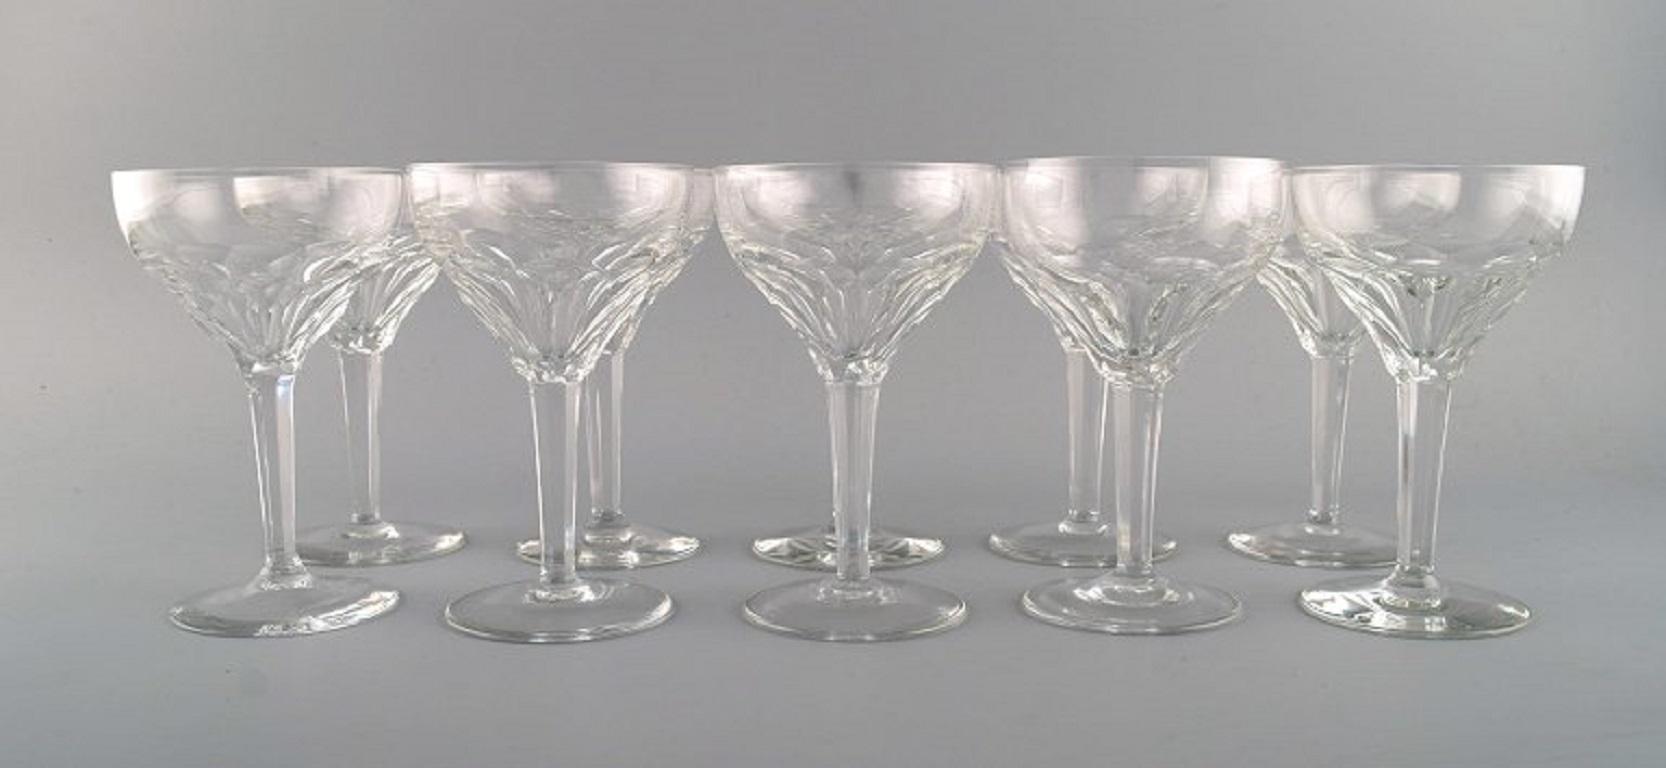 Val St. Lambert, Belgique. Dix verres à vin rouge en cristal clair soufflé à la bouche. 1930s.
Mesures : 15.6 x 9,8 cm
En parfait état.